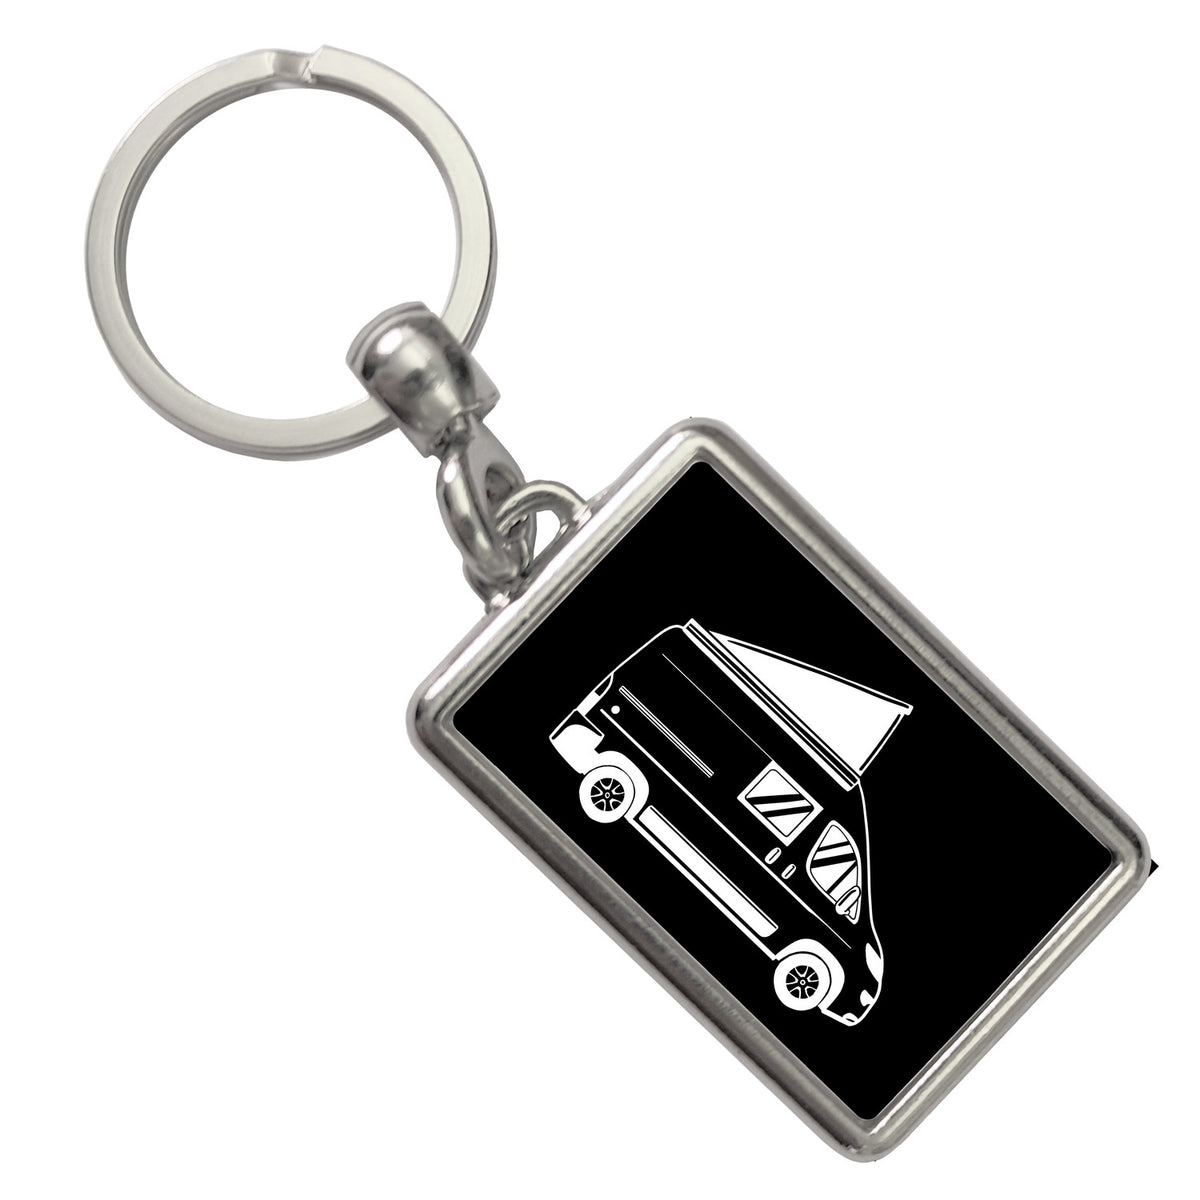 Campervan Schlüsselanhänger: Jetzt kaufen und stylisch unterwegs sein! –